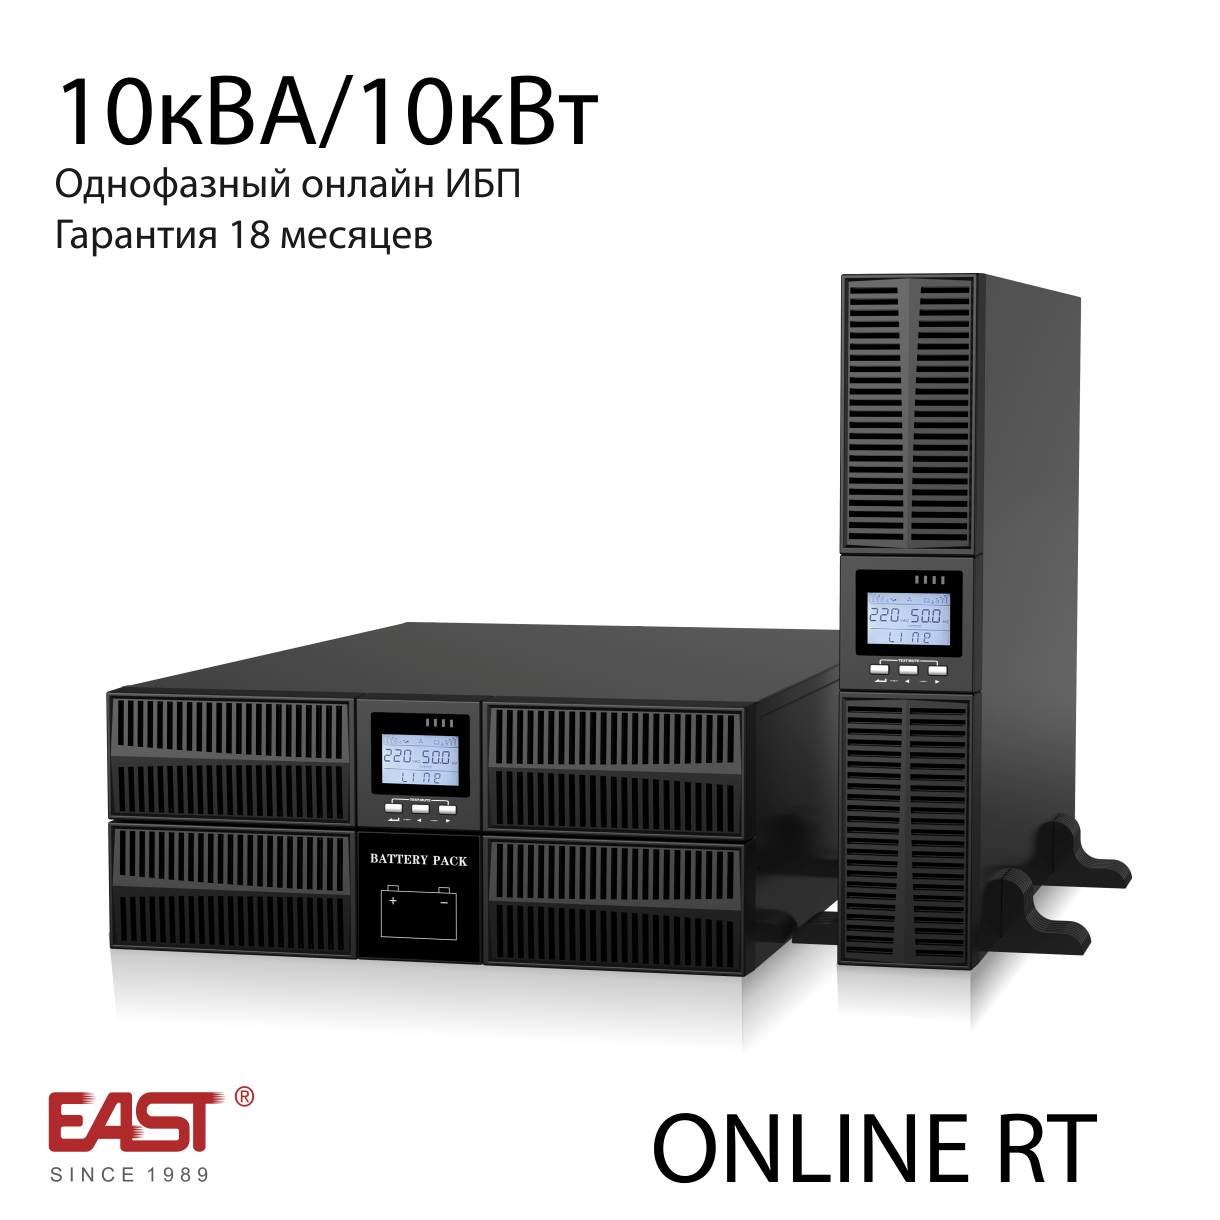 Источник бесперебойного питания East EA900 G4 RT 10 кВА/10 кВт в универсальном корпусе RT (башня/стойка),